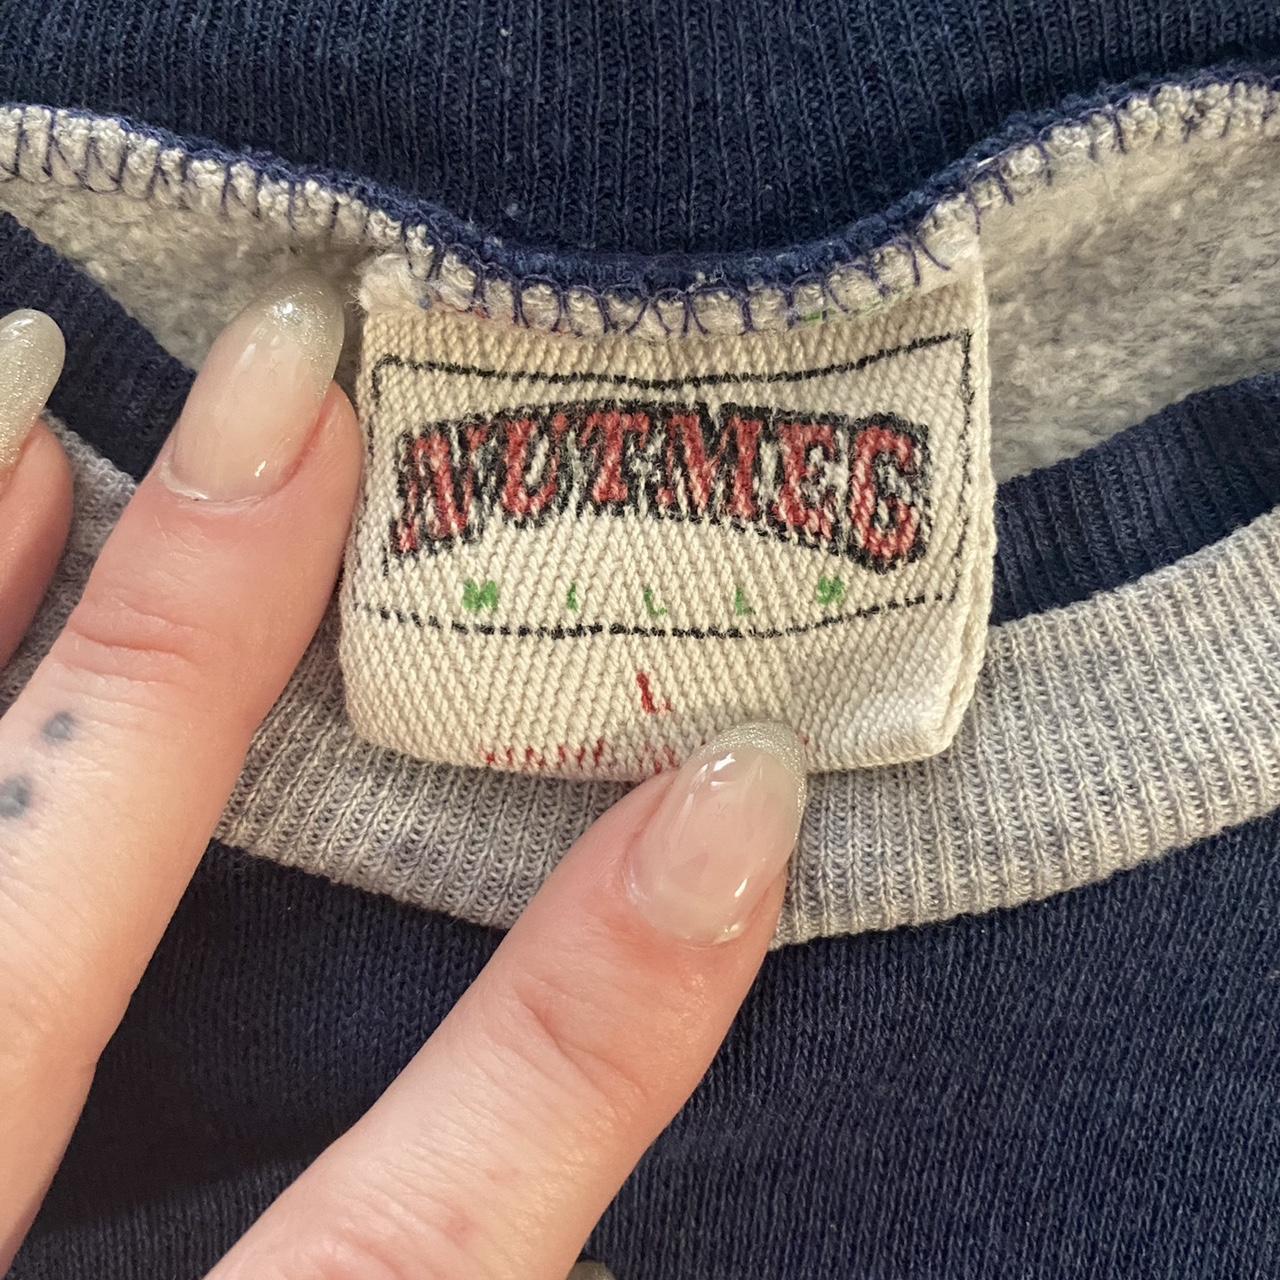 Chicago Bears NFL 'Members Club' Sweatshirt - Medium – The Vintage Store